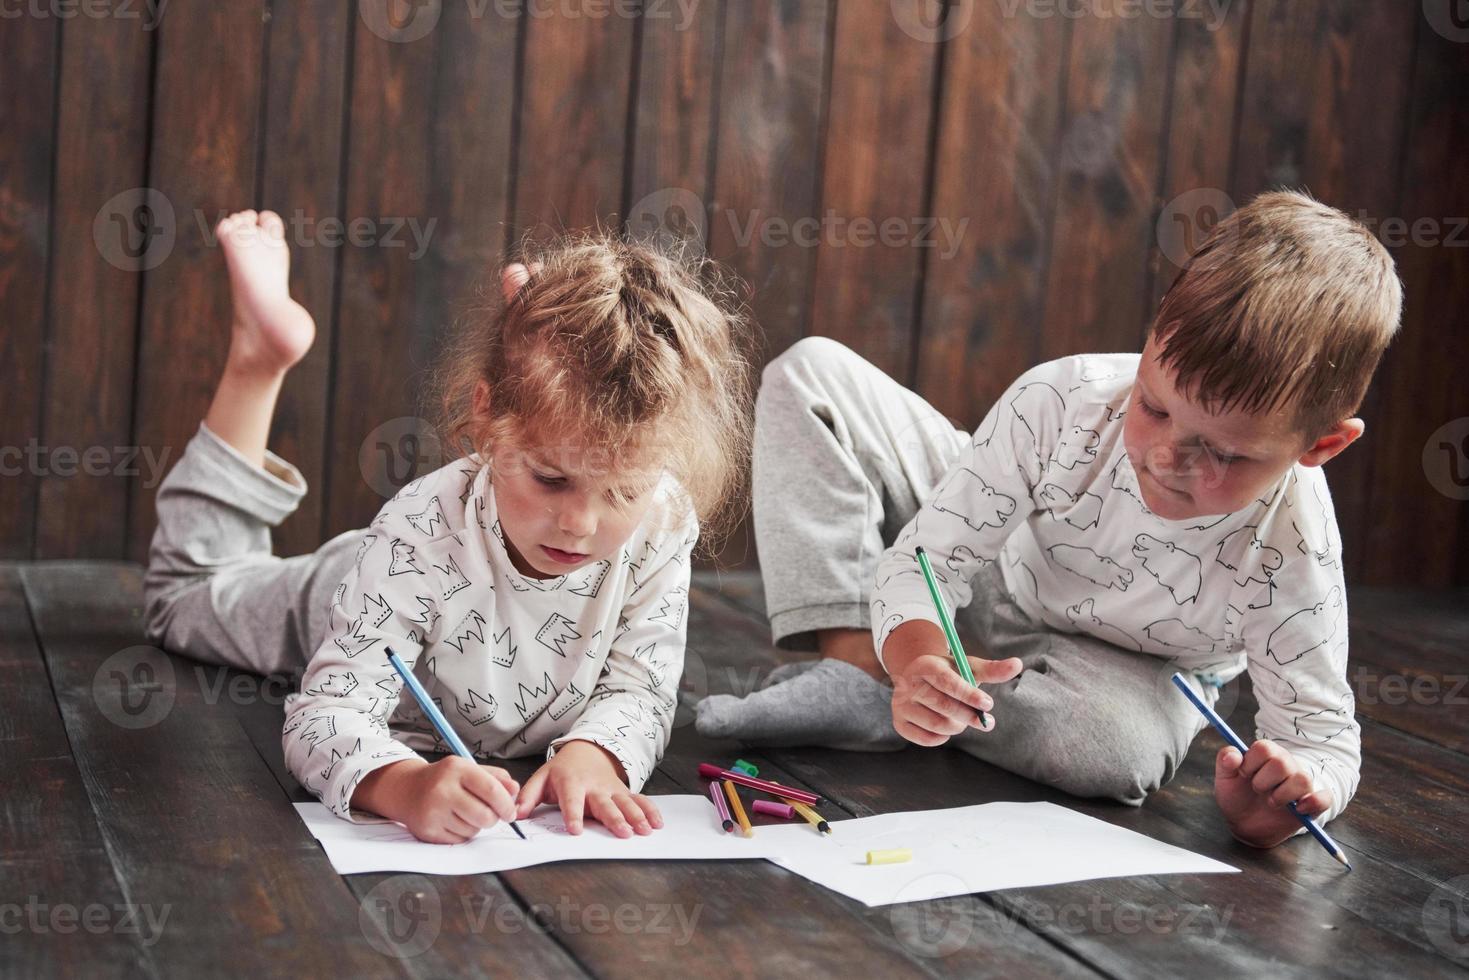 Kinder liegen im Schlafanzug auf dem Boden und zeichnen mit Bleistiften. süßes Kind malen mit Bleistiften foto